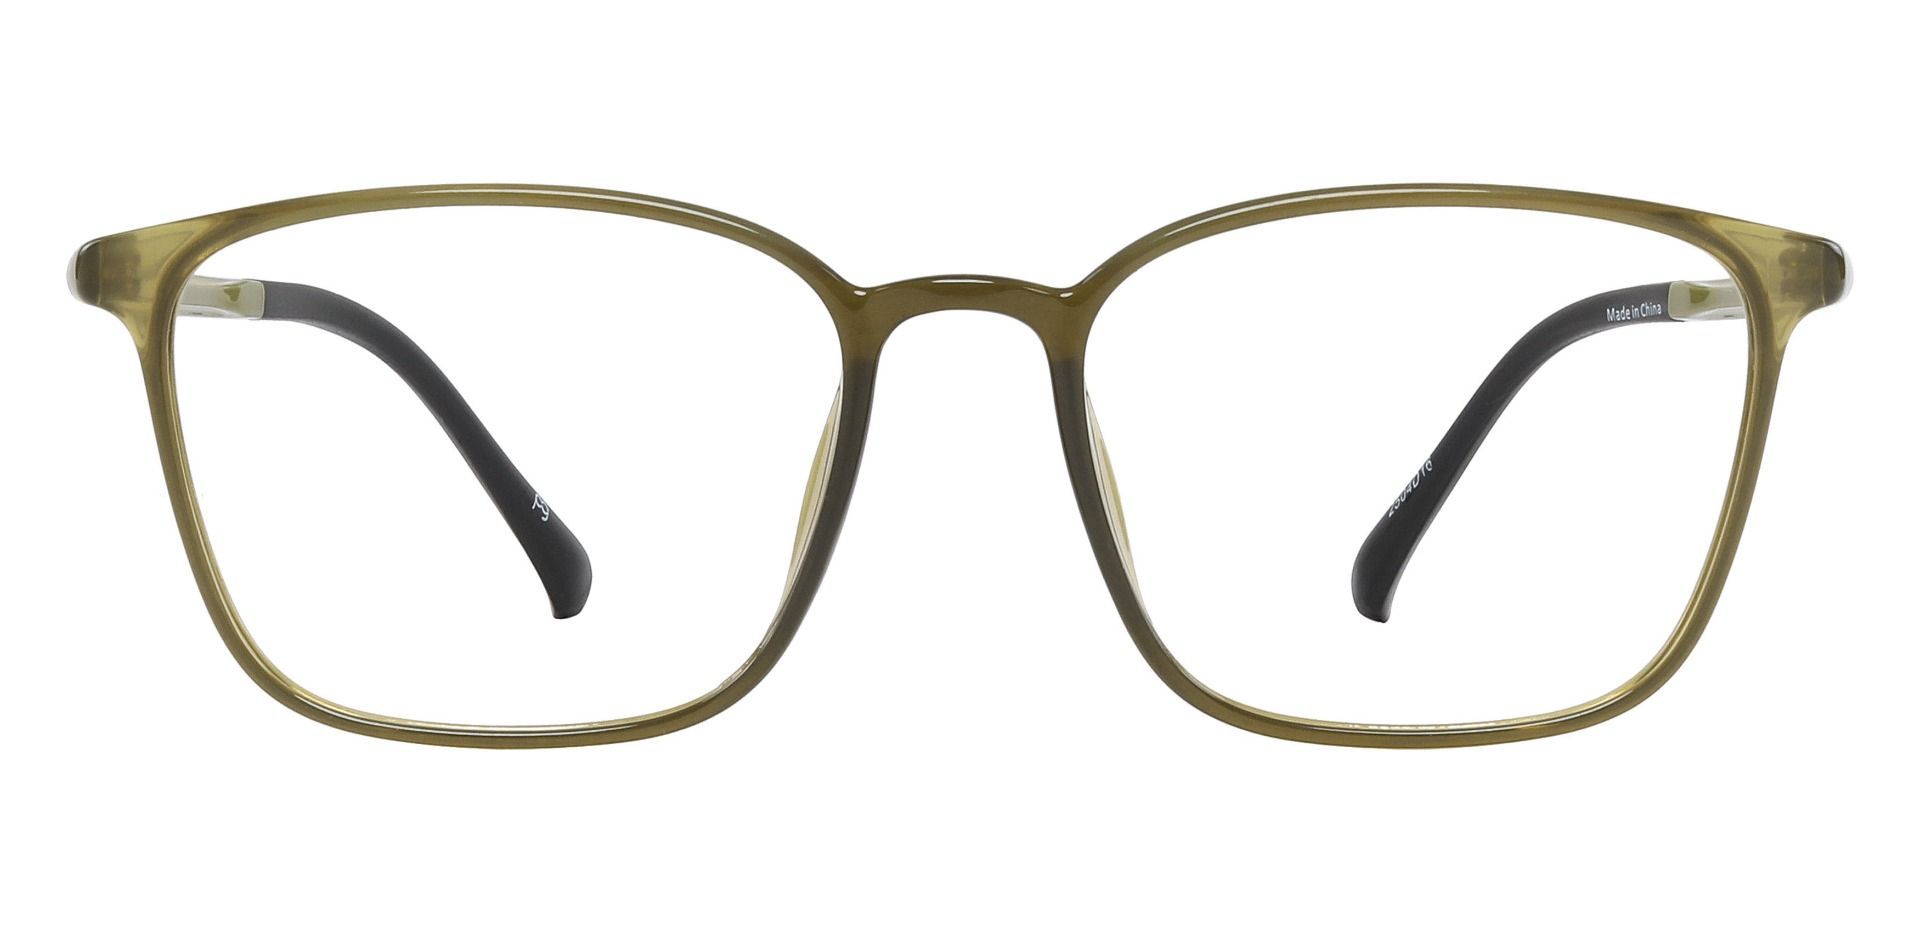 Gerber Square Blue Light Blocking Glasses - Blue | Men's Eyeglasses ...